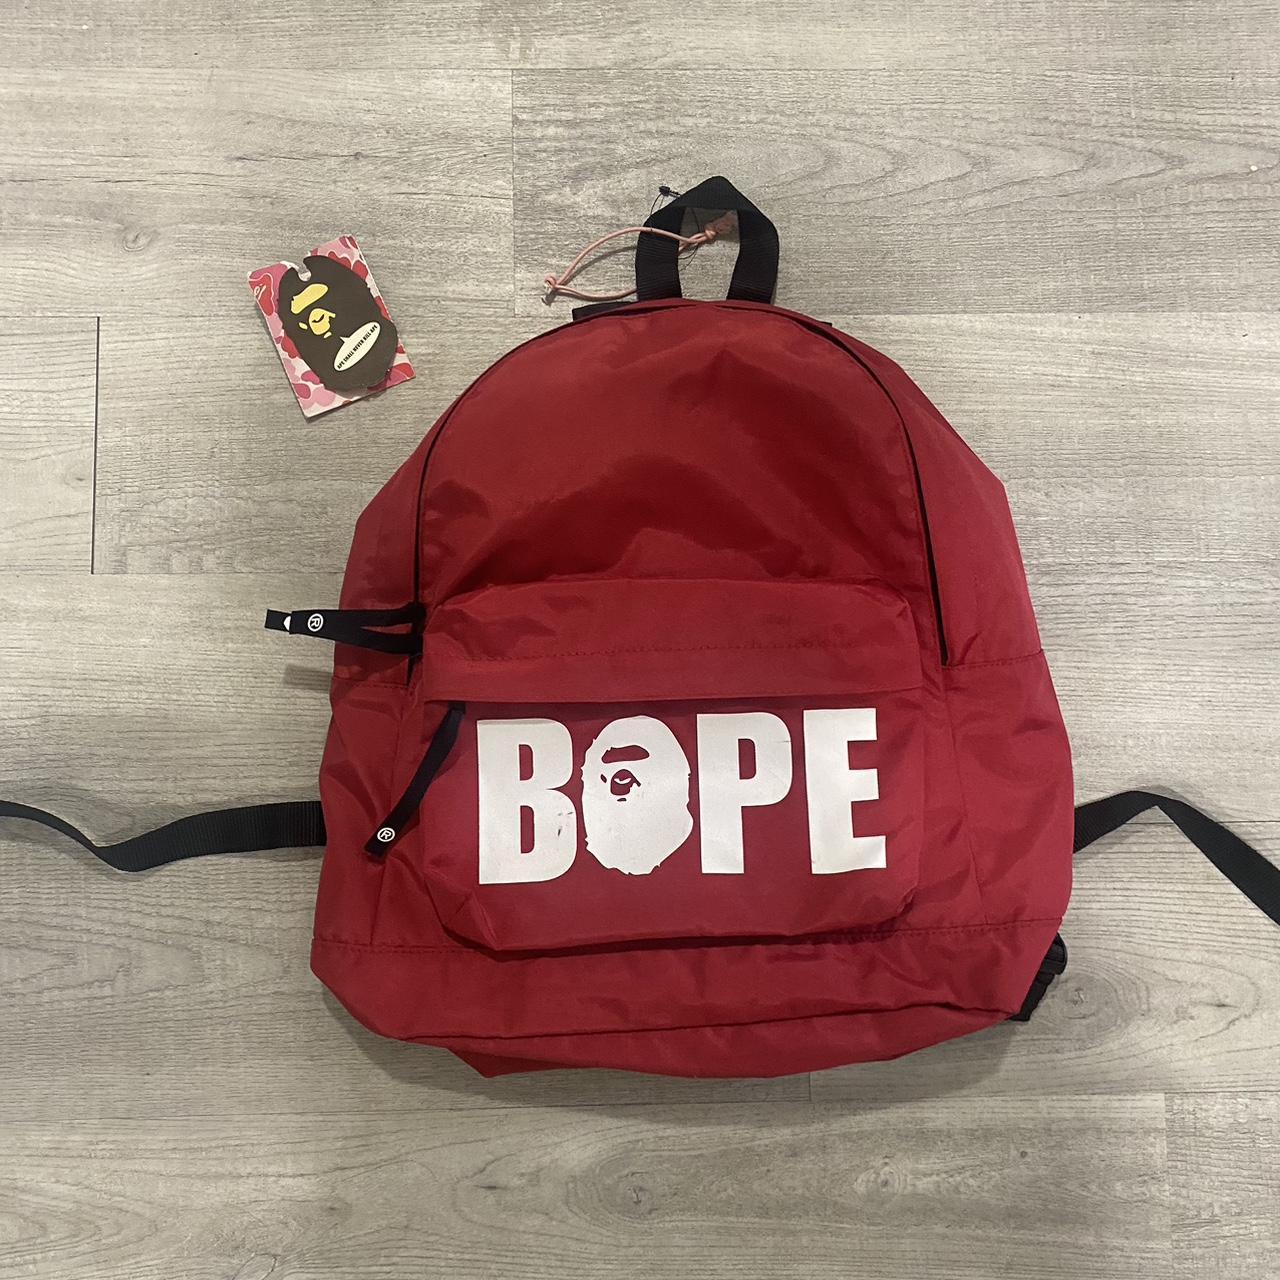 White bape-backpack - Depop